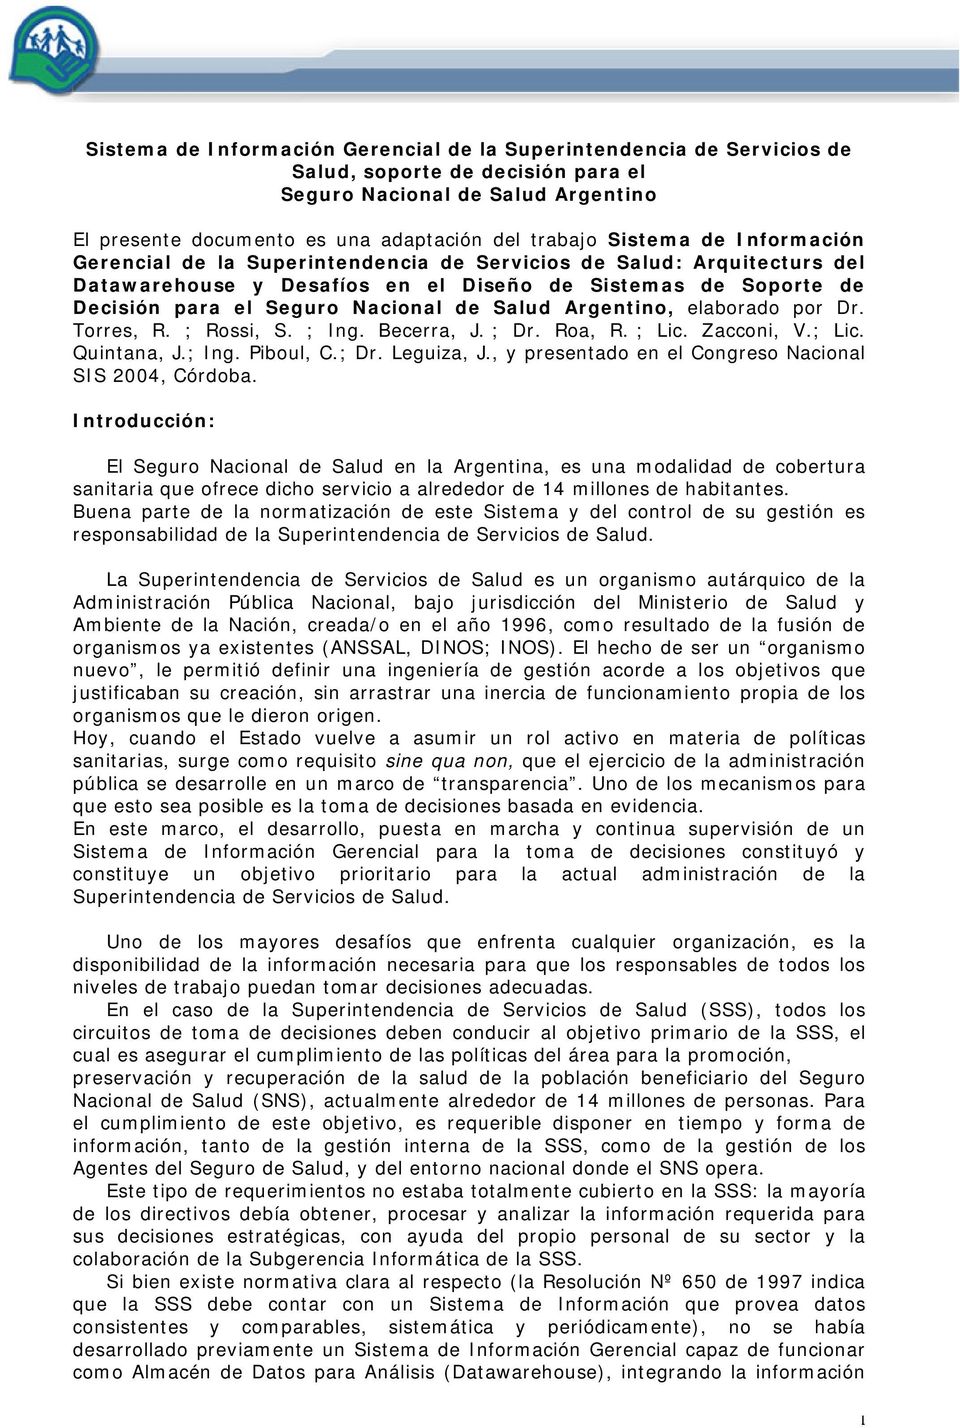 Salud Argentino, elaborado por Dr. Torres, R. ; Rossi, S. ; Ing. Becerra, J. ; Dr. Roa, R. ; Lic. Zacconi, V.; Lic. Quintana, J.; Ing. Piboul, C.; Dr. Leguiza, J.